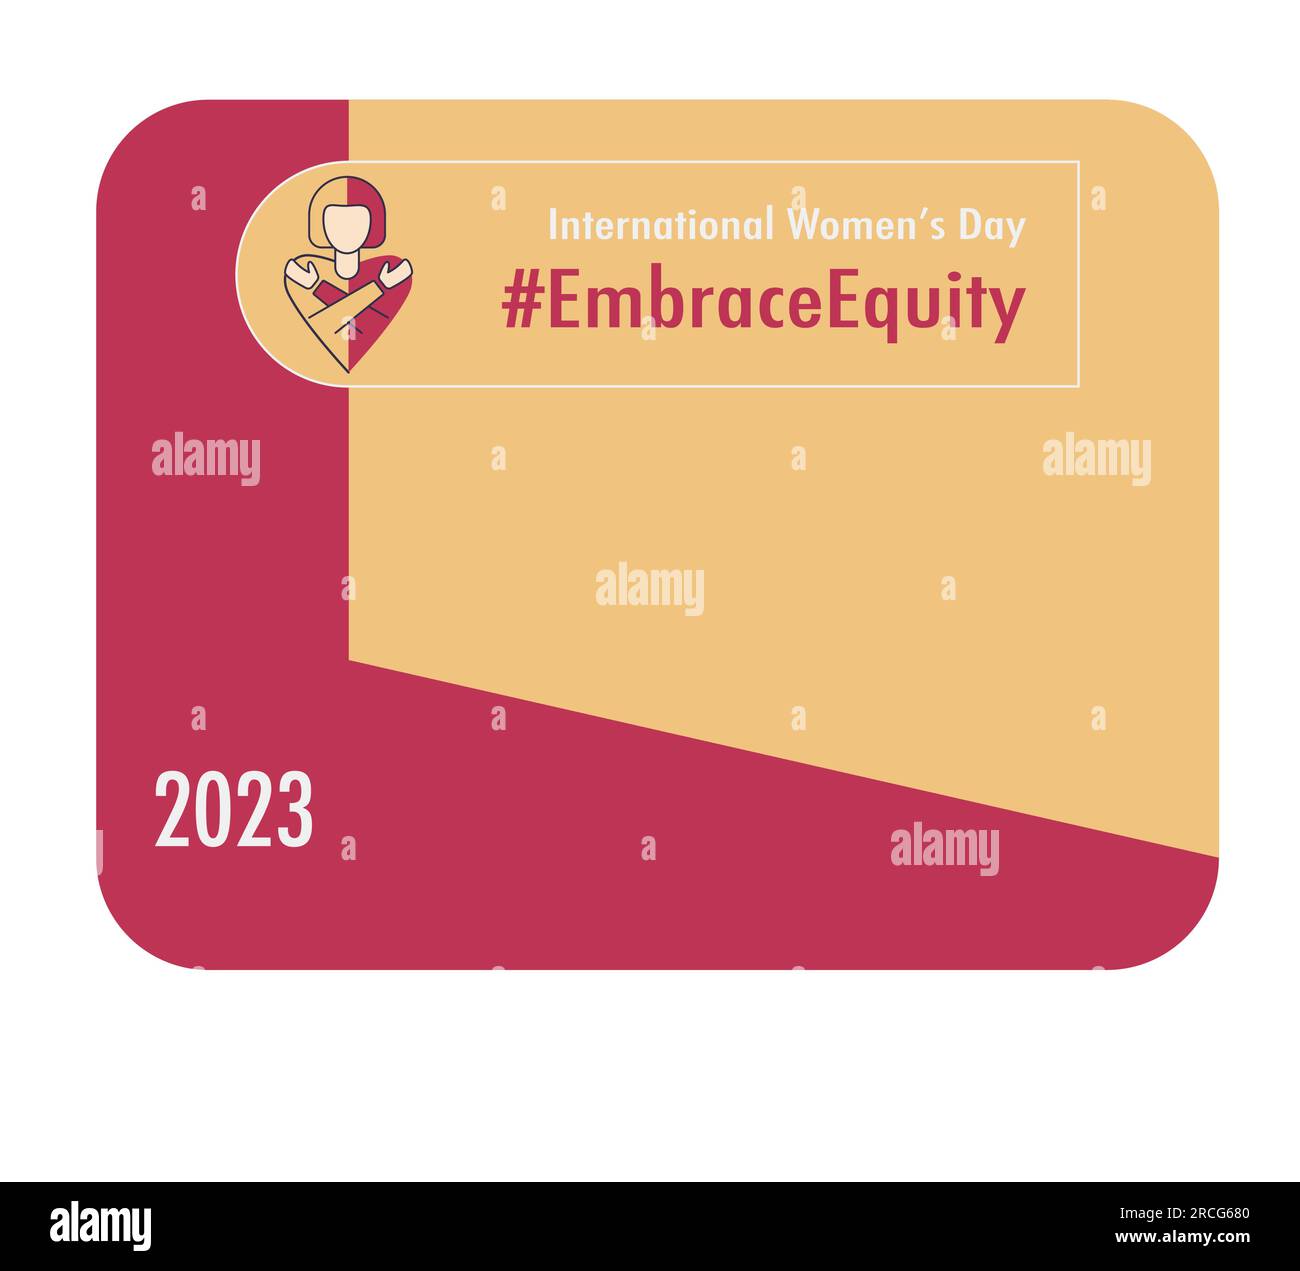 Modèle de carte de la Journée internationale de la femme 2023 #EmbraceEquity Donnez à l'équité une énorme adhésion. Adoptez l'équité. L'égalité des chances ne suffit plus Vecto Illustration de Vecteur